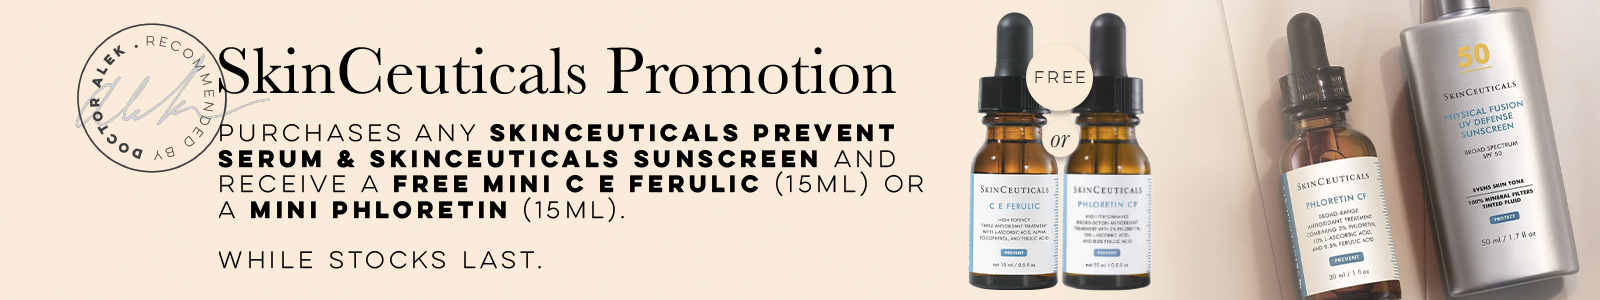 SkinCeuticals mini promo Website Banner